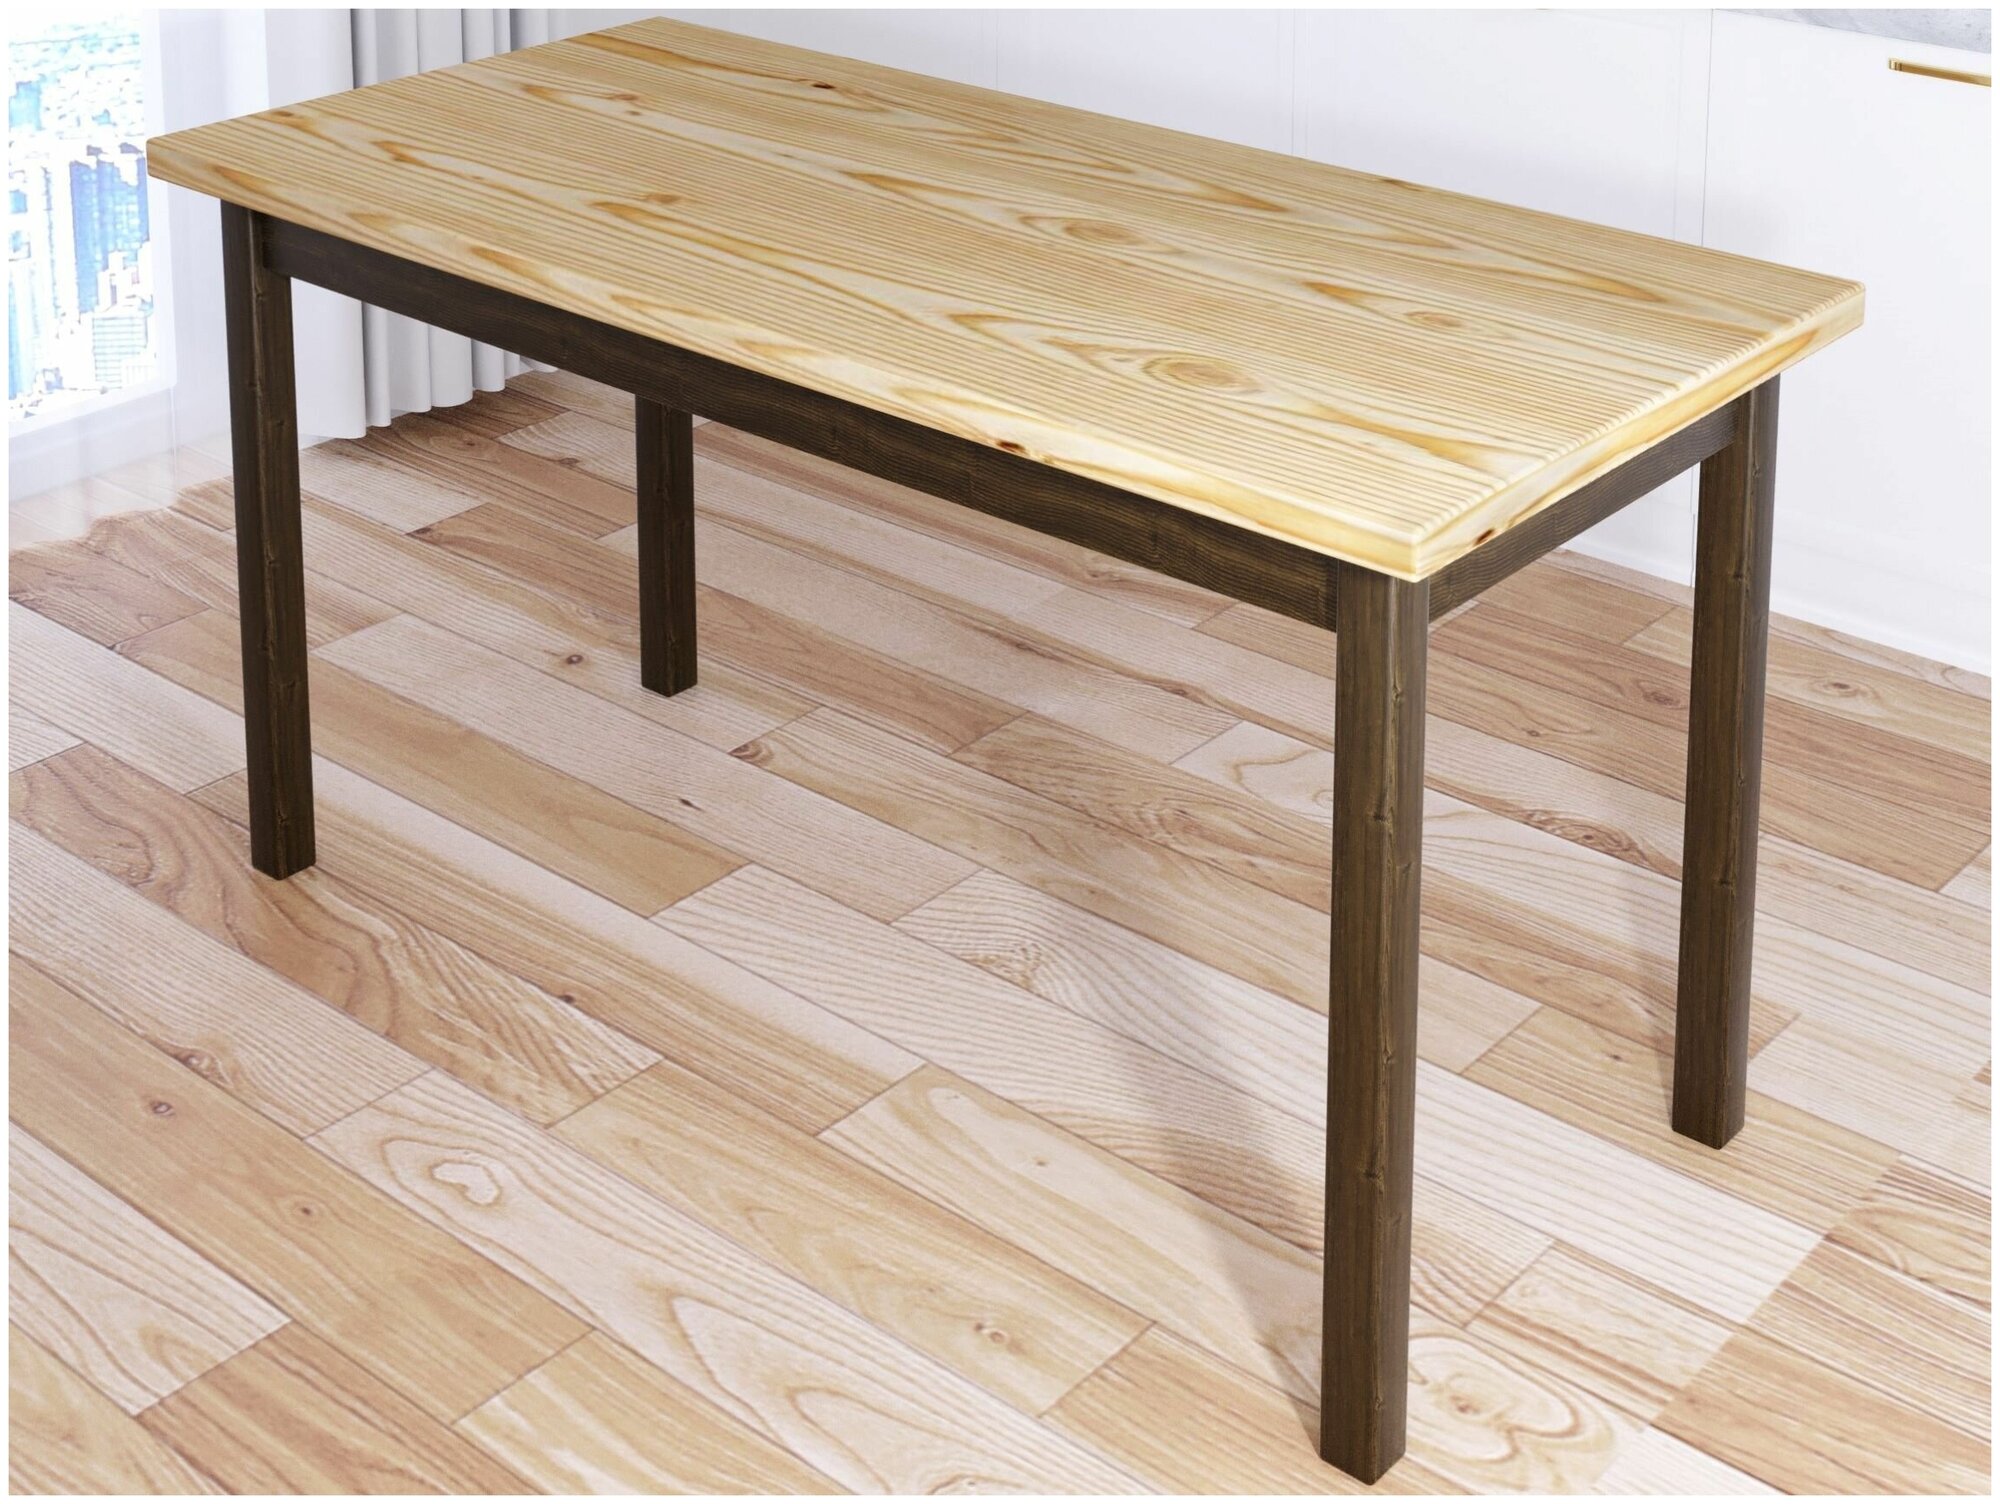 Стол кухонный Классика из массива сосны, лакированная столешница 40 мм и ножки цвета темного дуба, 130х60х75 см